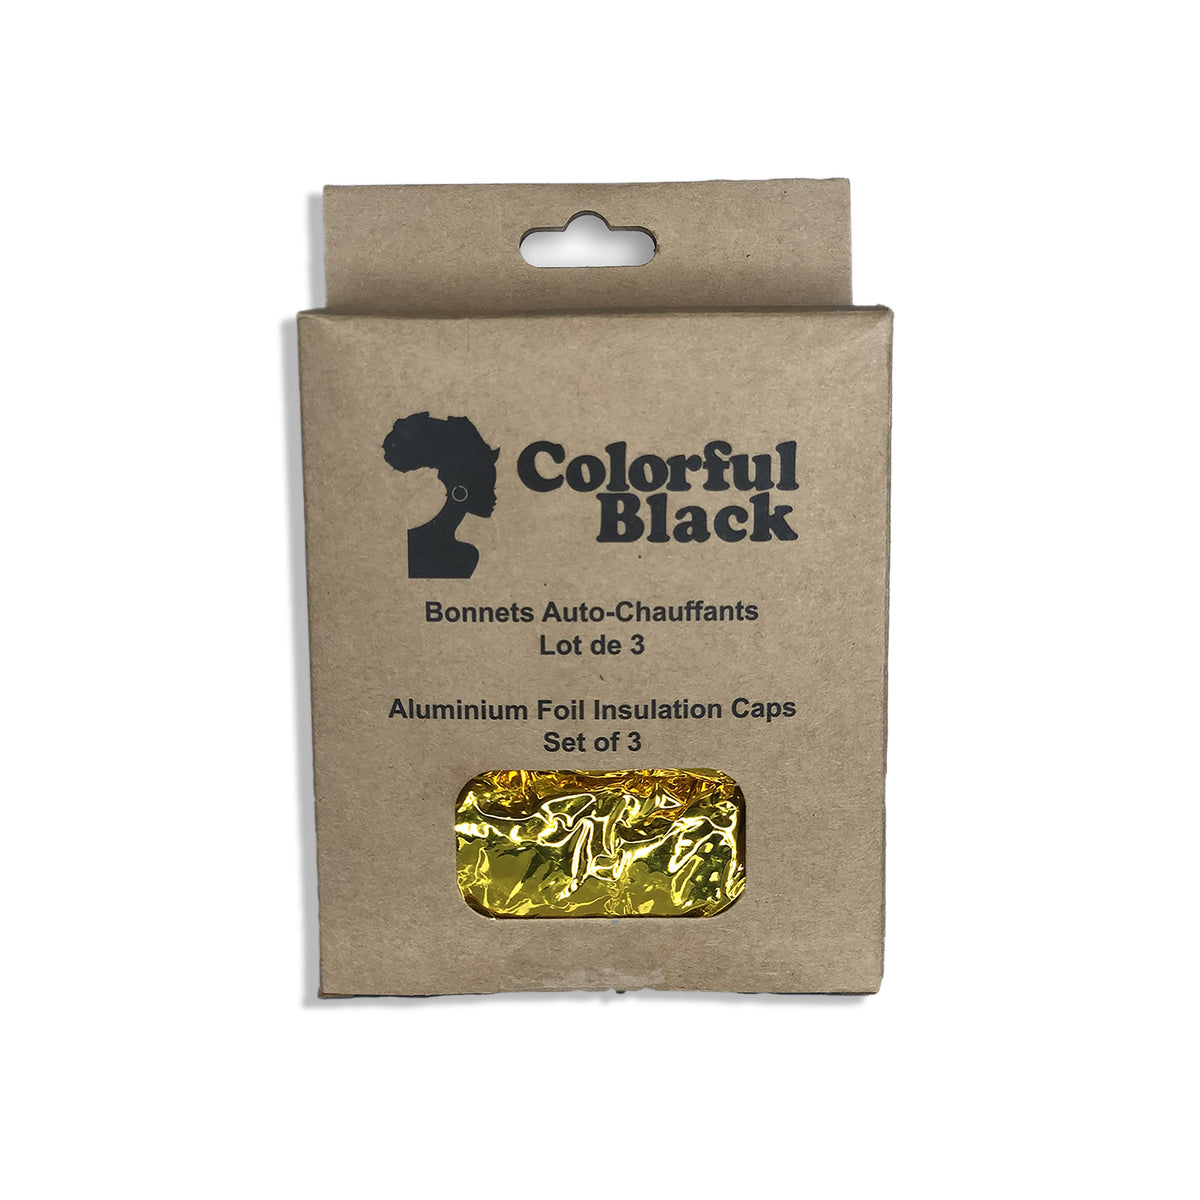 Colorful Black - Aluminium Foil Insulation Caps - Set of 3